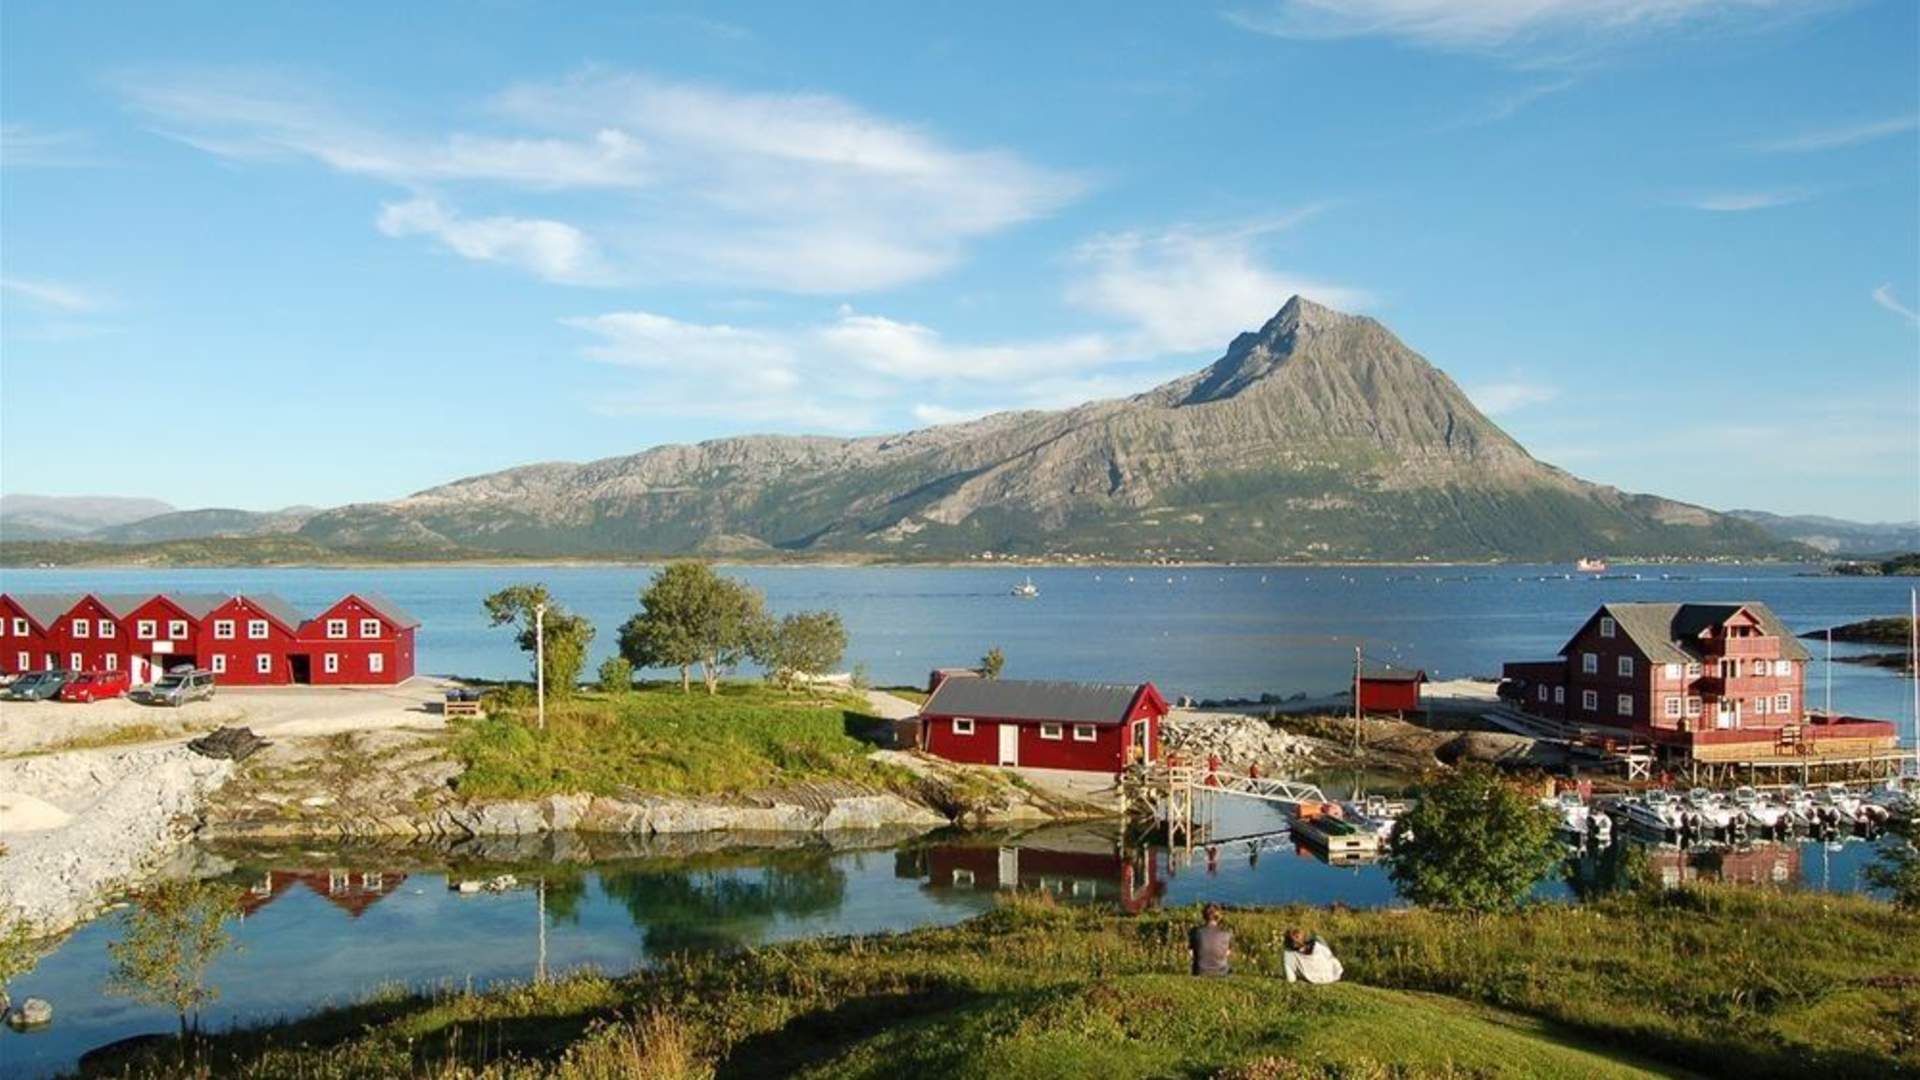 Experience Arnøyene - Islands outside Bodø